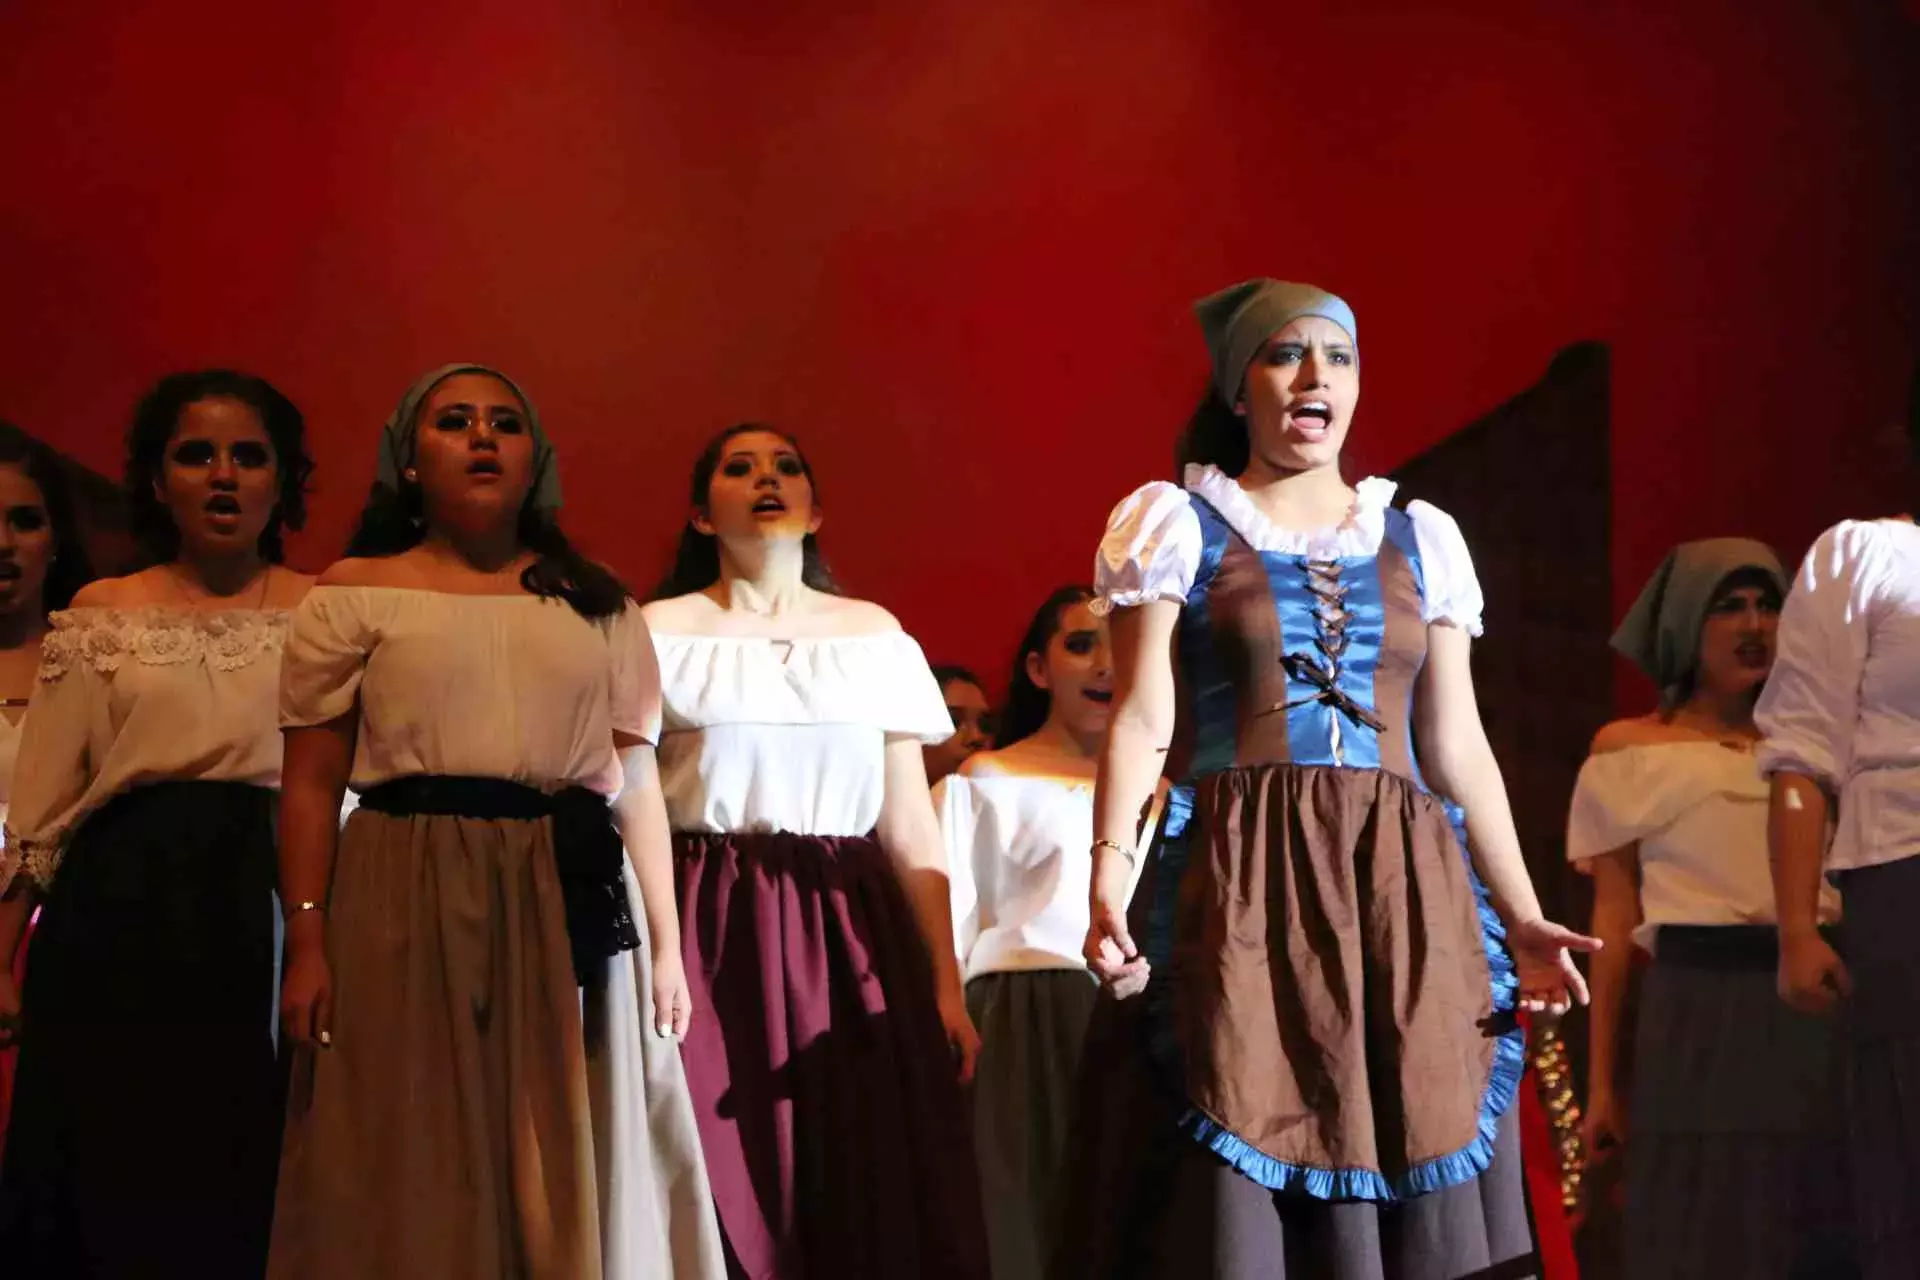 El Jorobado en Notre, musical basado en la obra "Nuestra señora de París" de Víctor Hugo"